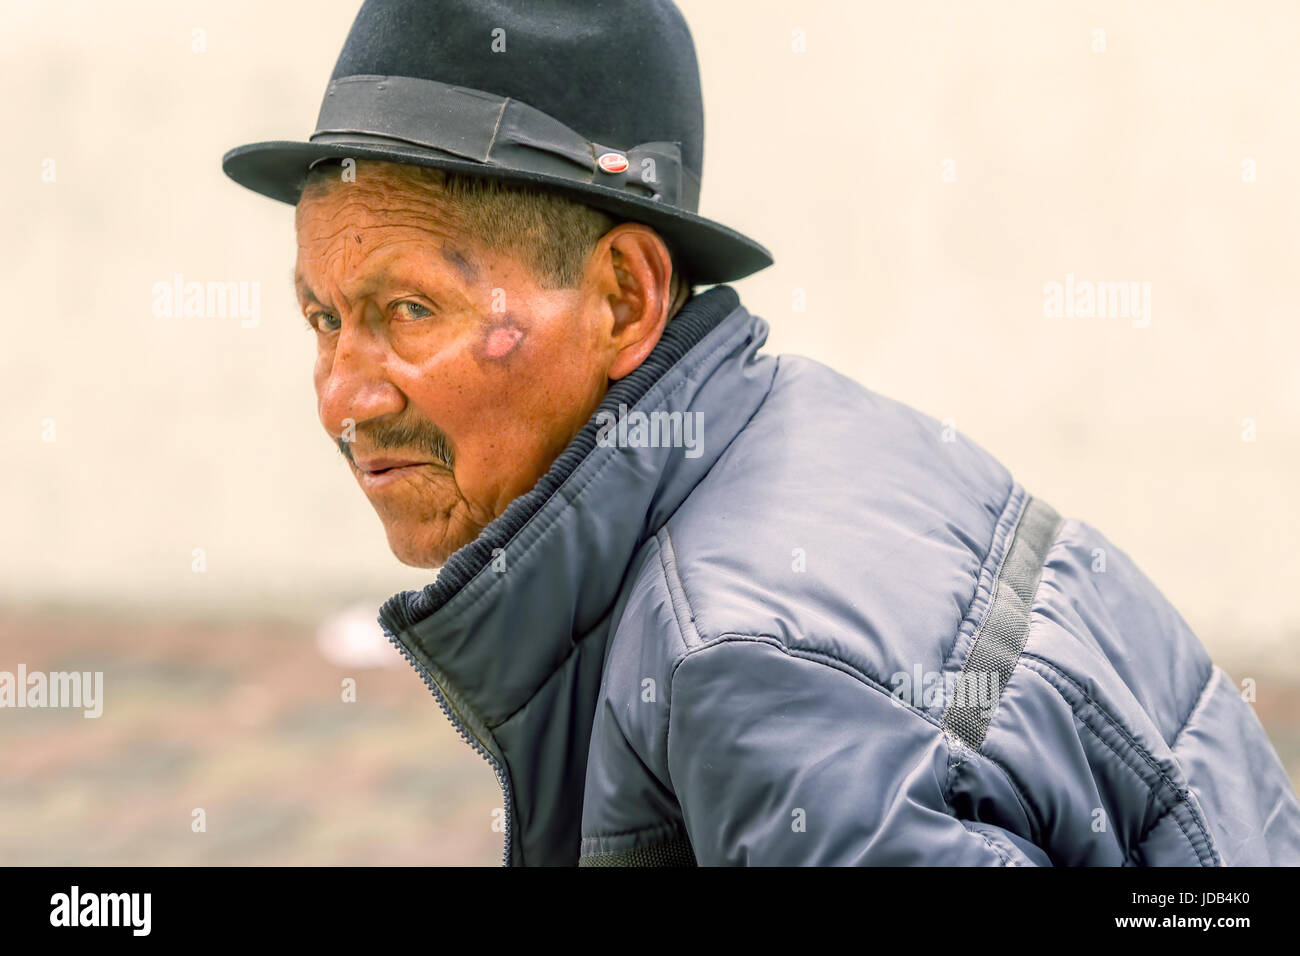 Banos De Agua Santa, Ecuador - 29 November 2014: Portrait Of An Old Indigenous Man On The Streets Of Banos De Agua Santa, South America, Christmas Car Stock Photo